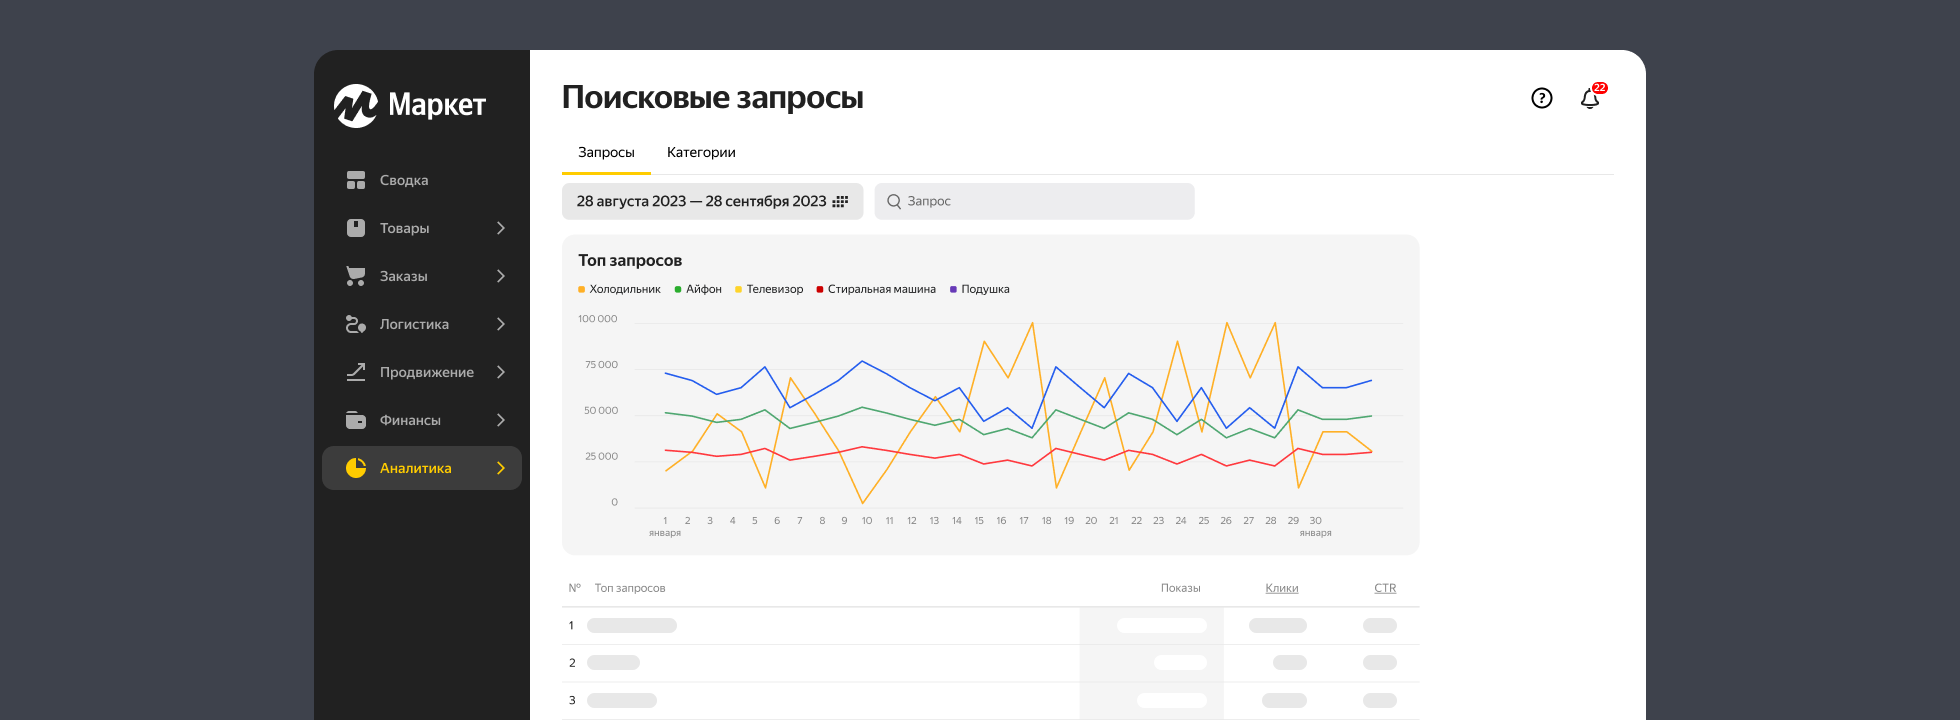 Поисковые запросы в Яндекс Маркете